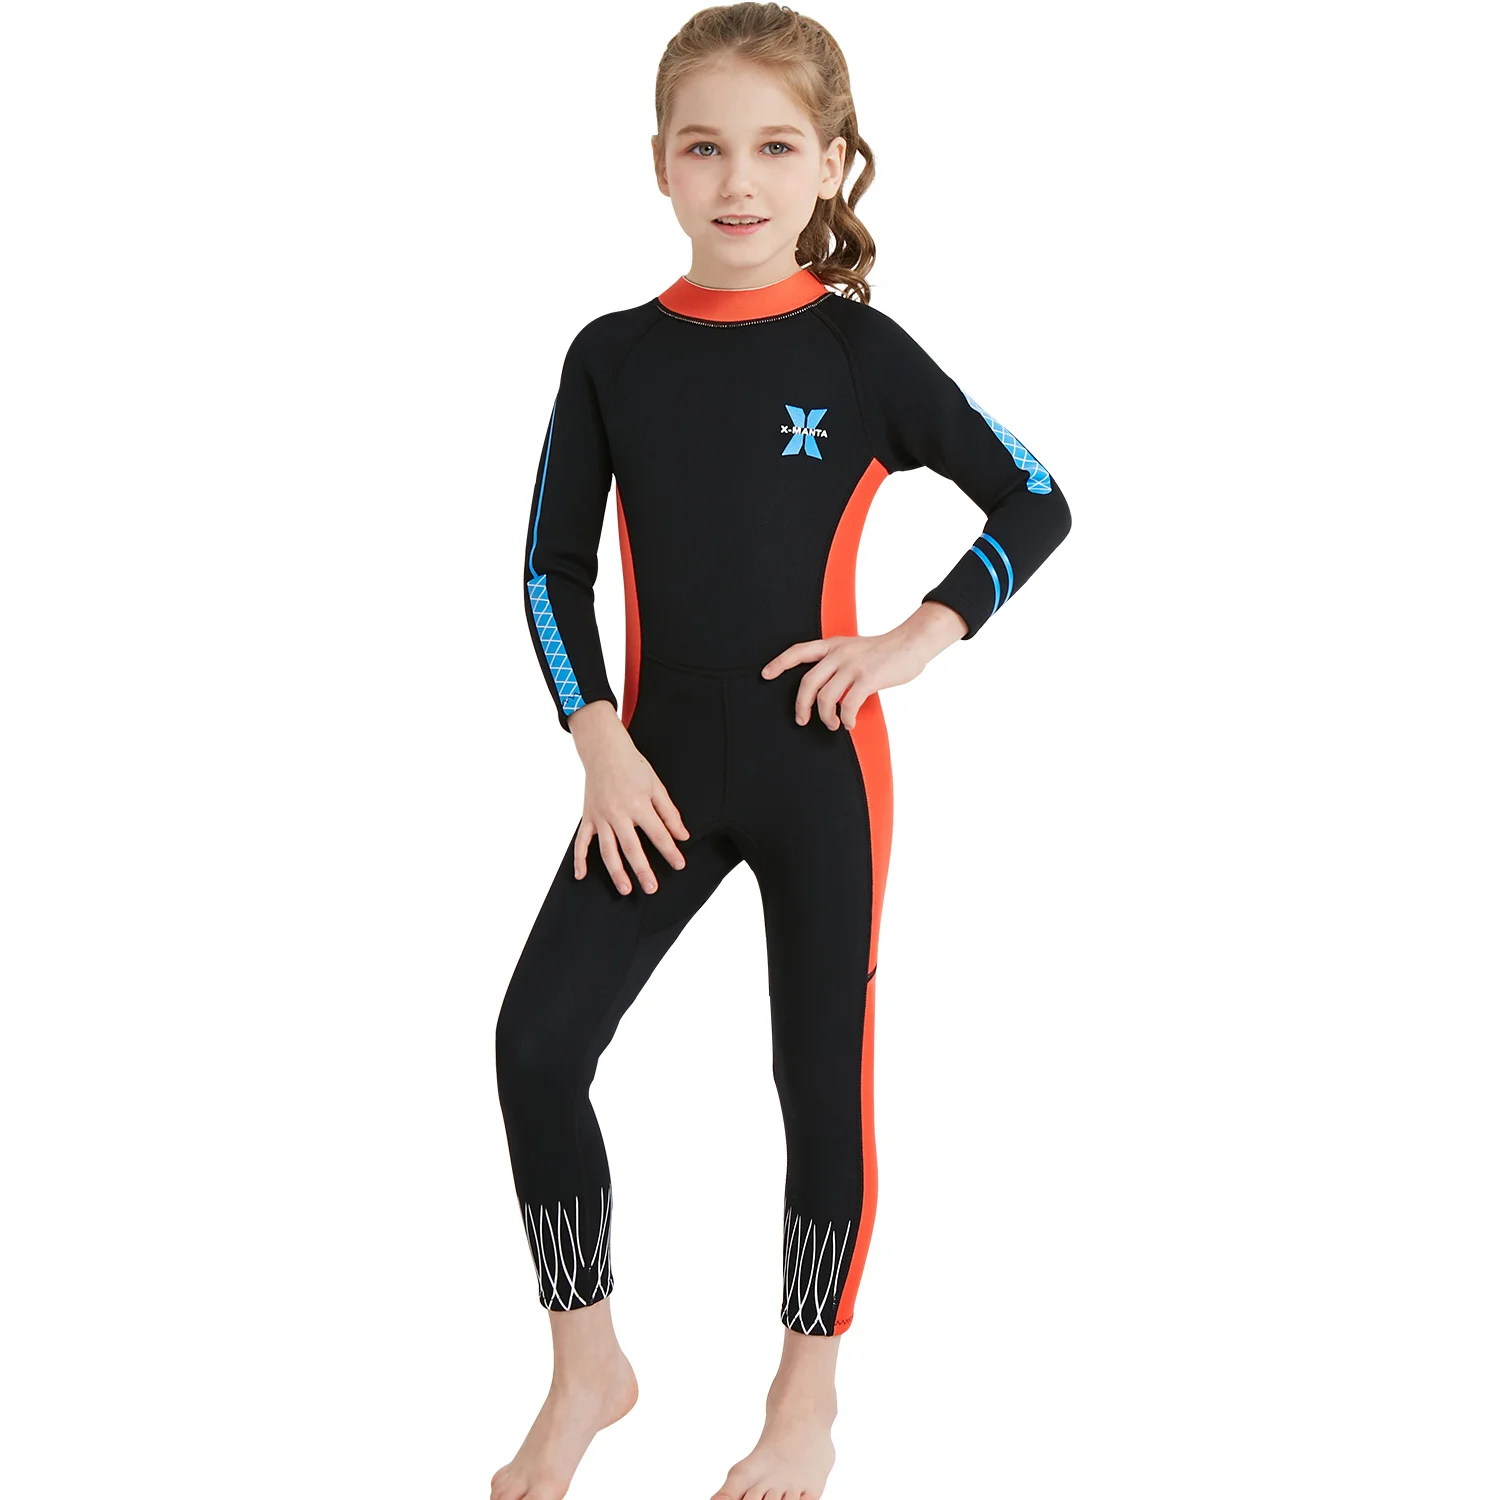 WildSurfer 2,5 мм Детские гидрокостюм для плавания цельные теплый купальник Девочки неопрен гидрокостюм скины дайвинг дети Traje de Buceo WS116